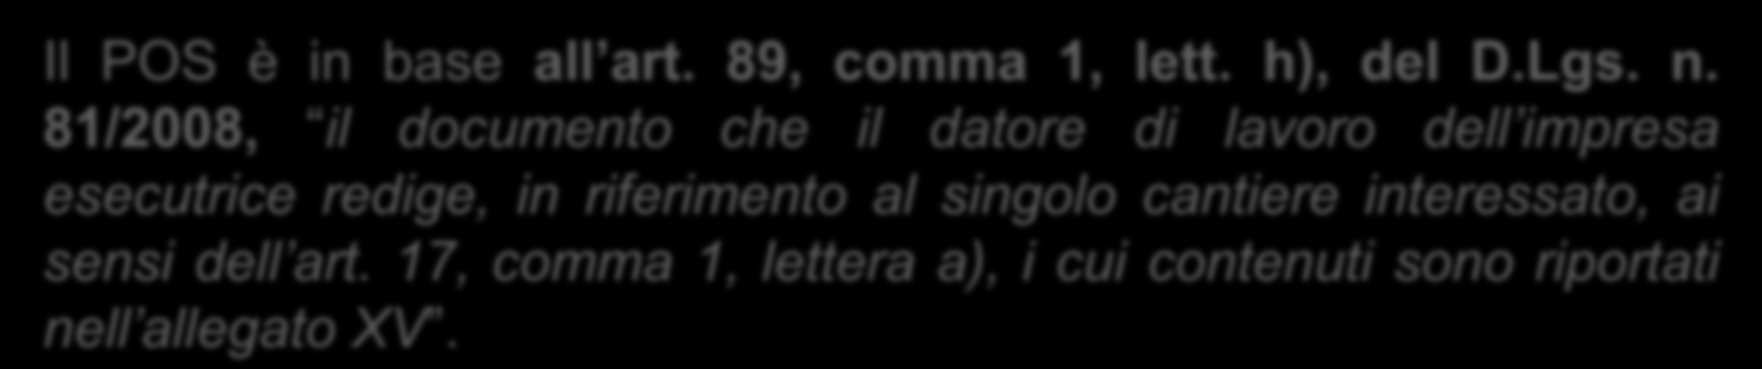 CONTENUTI MINIMI DEL POS/1 Premessa Il POS è in base all art. 89, comma 1, lett. h), del D.Lgs. n.